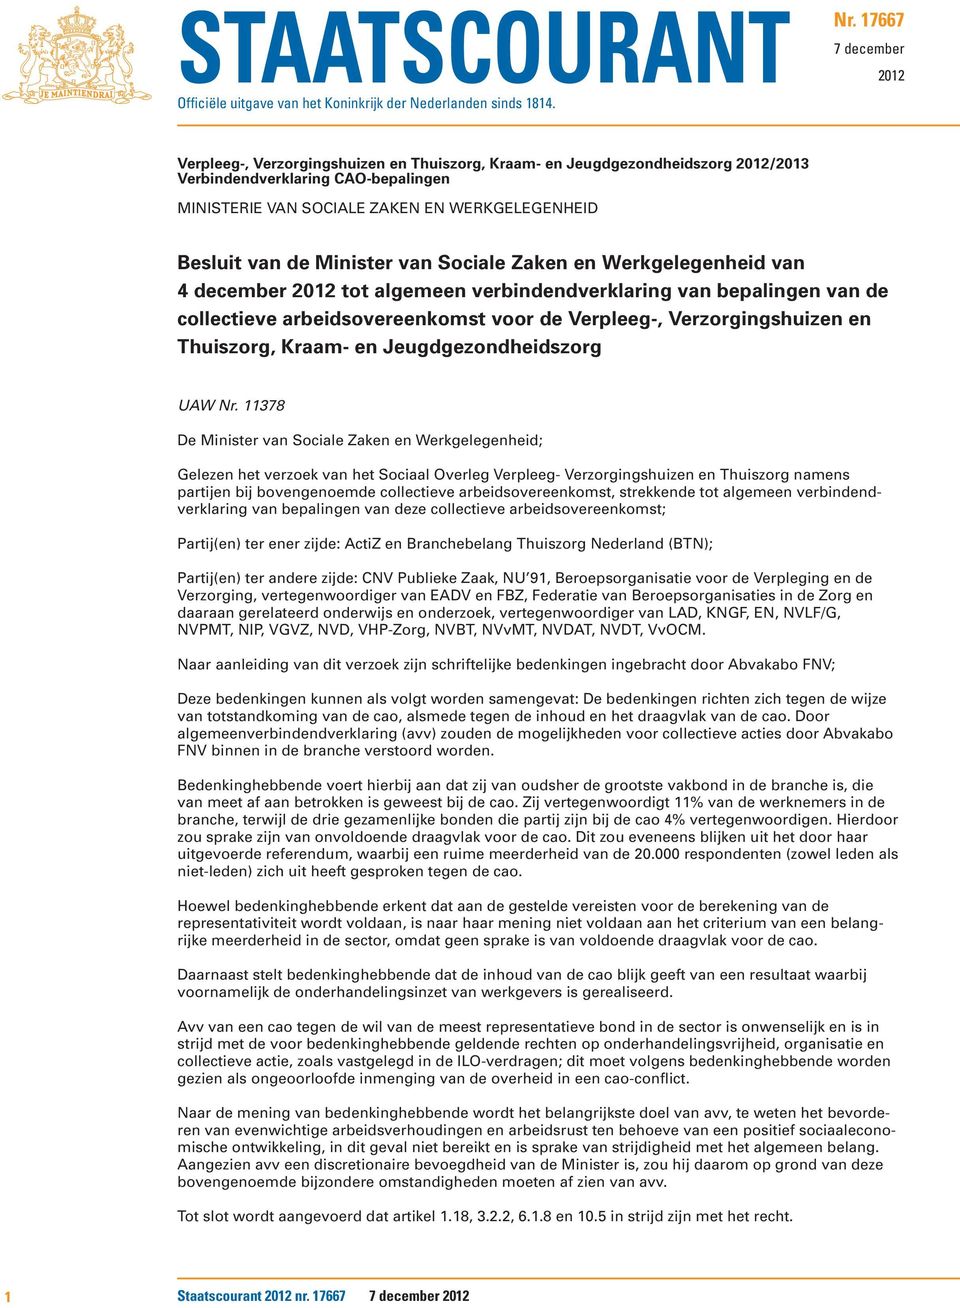 van de Minister van Sociale Zaken en Werkgelegenheid van 4 december 2012 tot algemeen verbindendverklaring van bepalingen van de collectieve arbeidsovereenkomst voor de Verpleeg-, Verzorgingshuizen